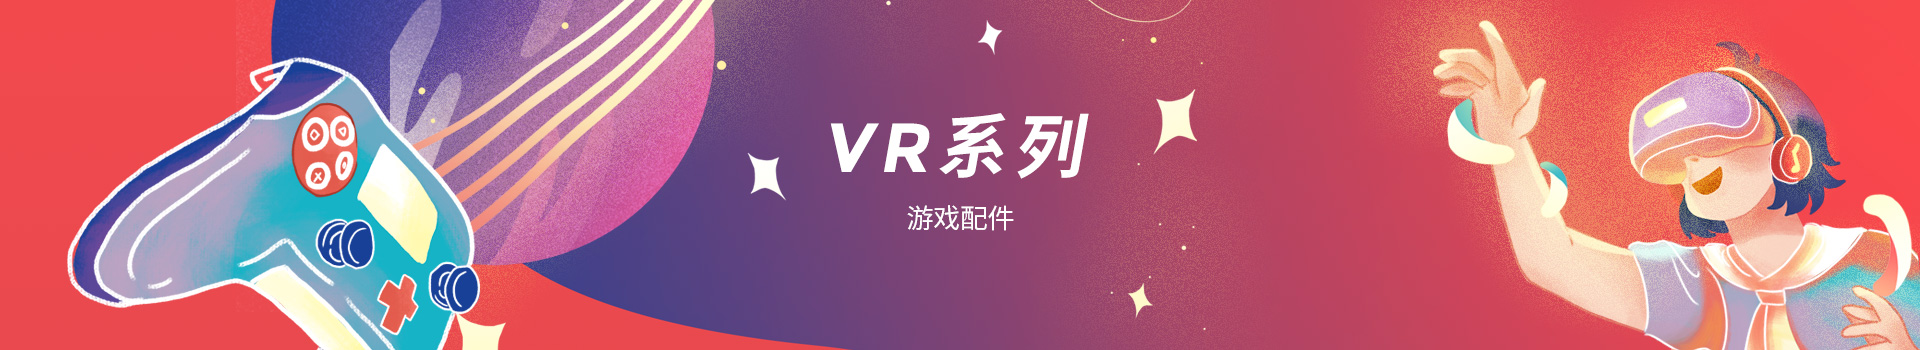 VR 系列